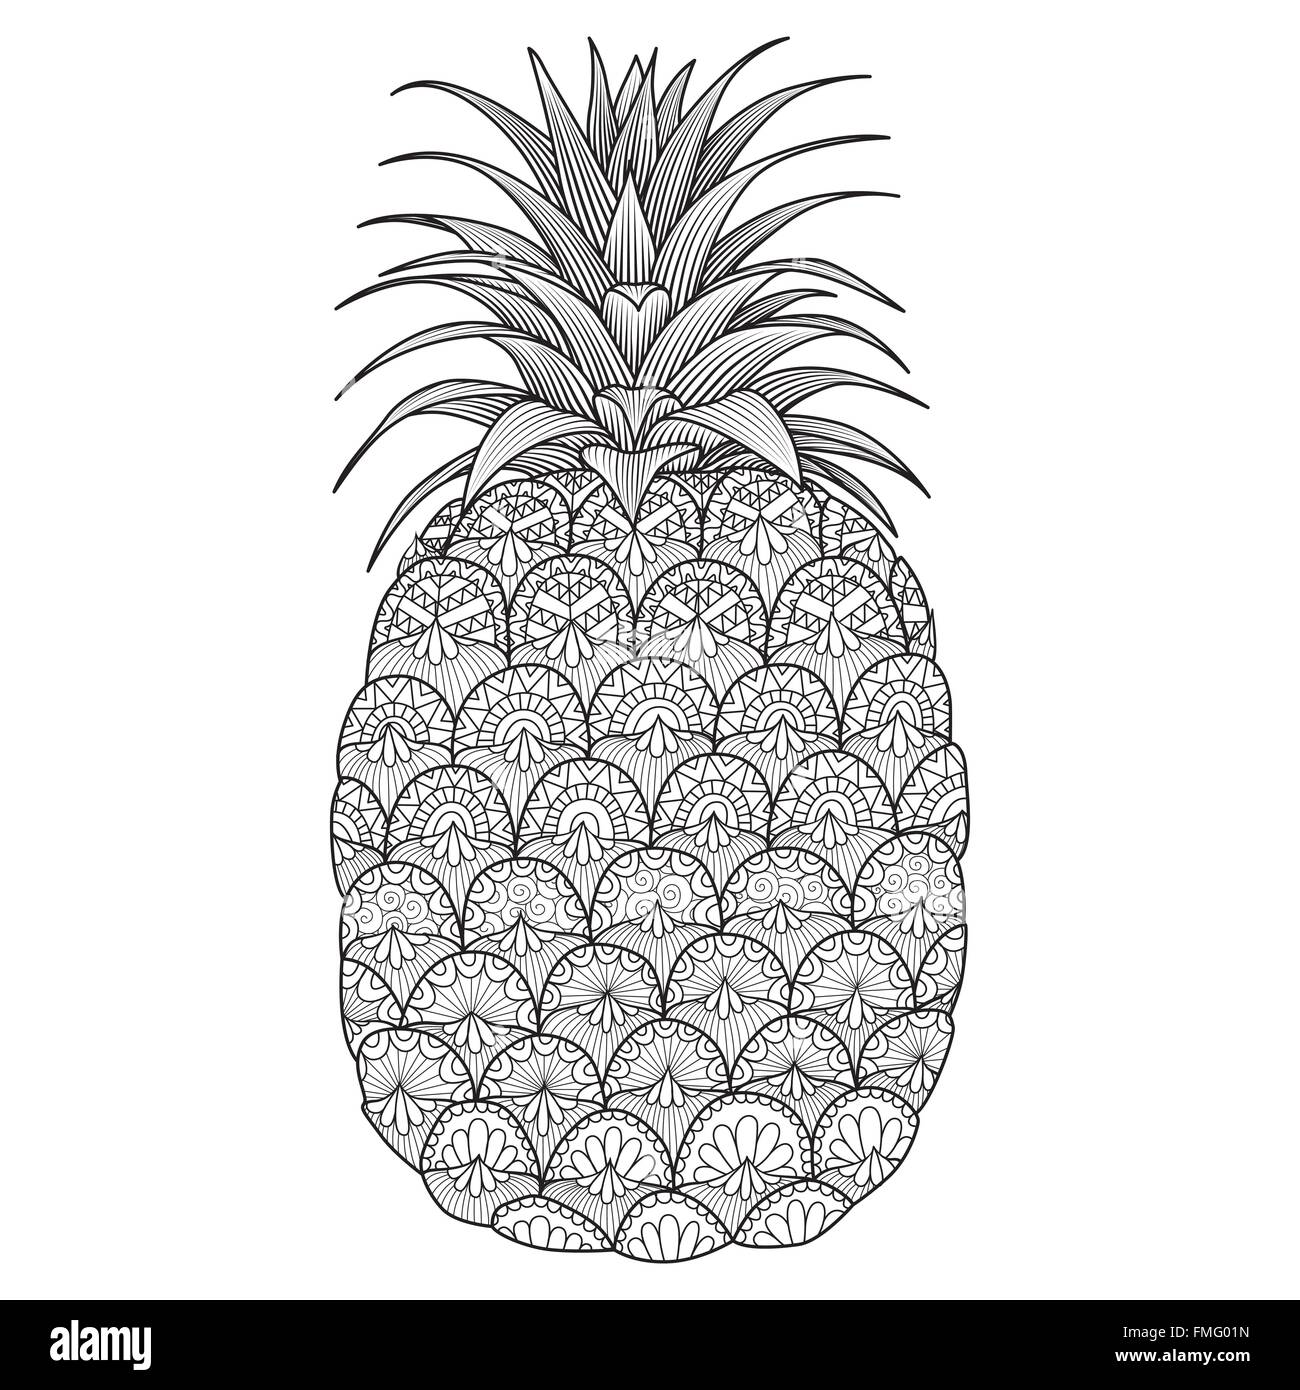 Line art design d'ananas pour la coloration livre pour adulte, logo, t shirt design, flyer, tatouages, etc. Illustration de Vecteur